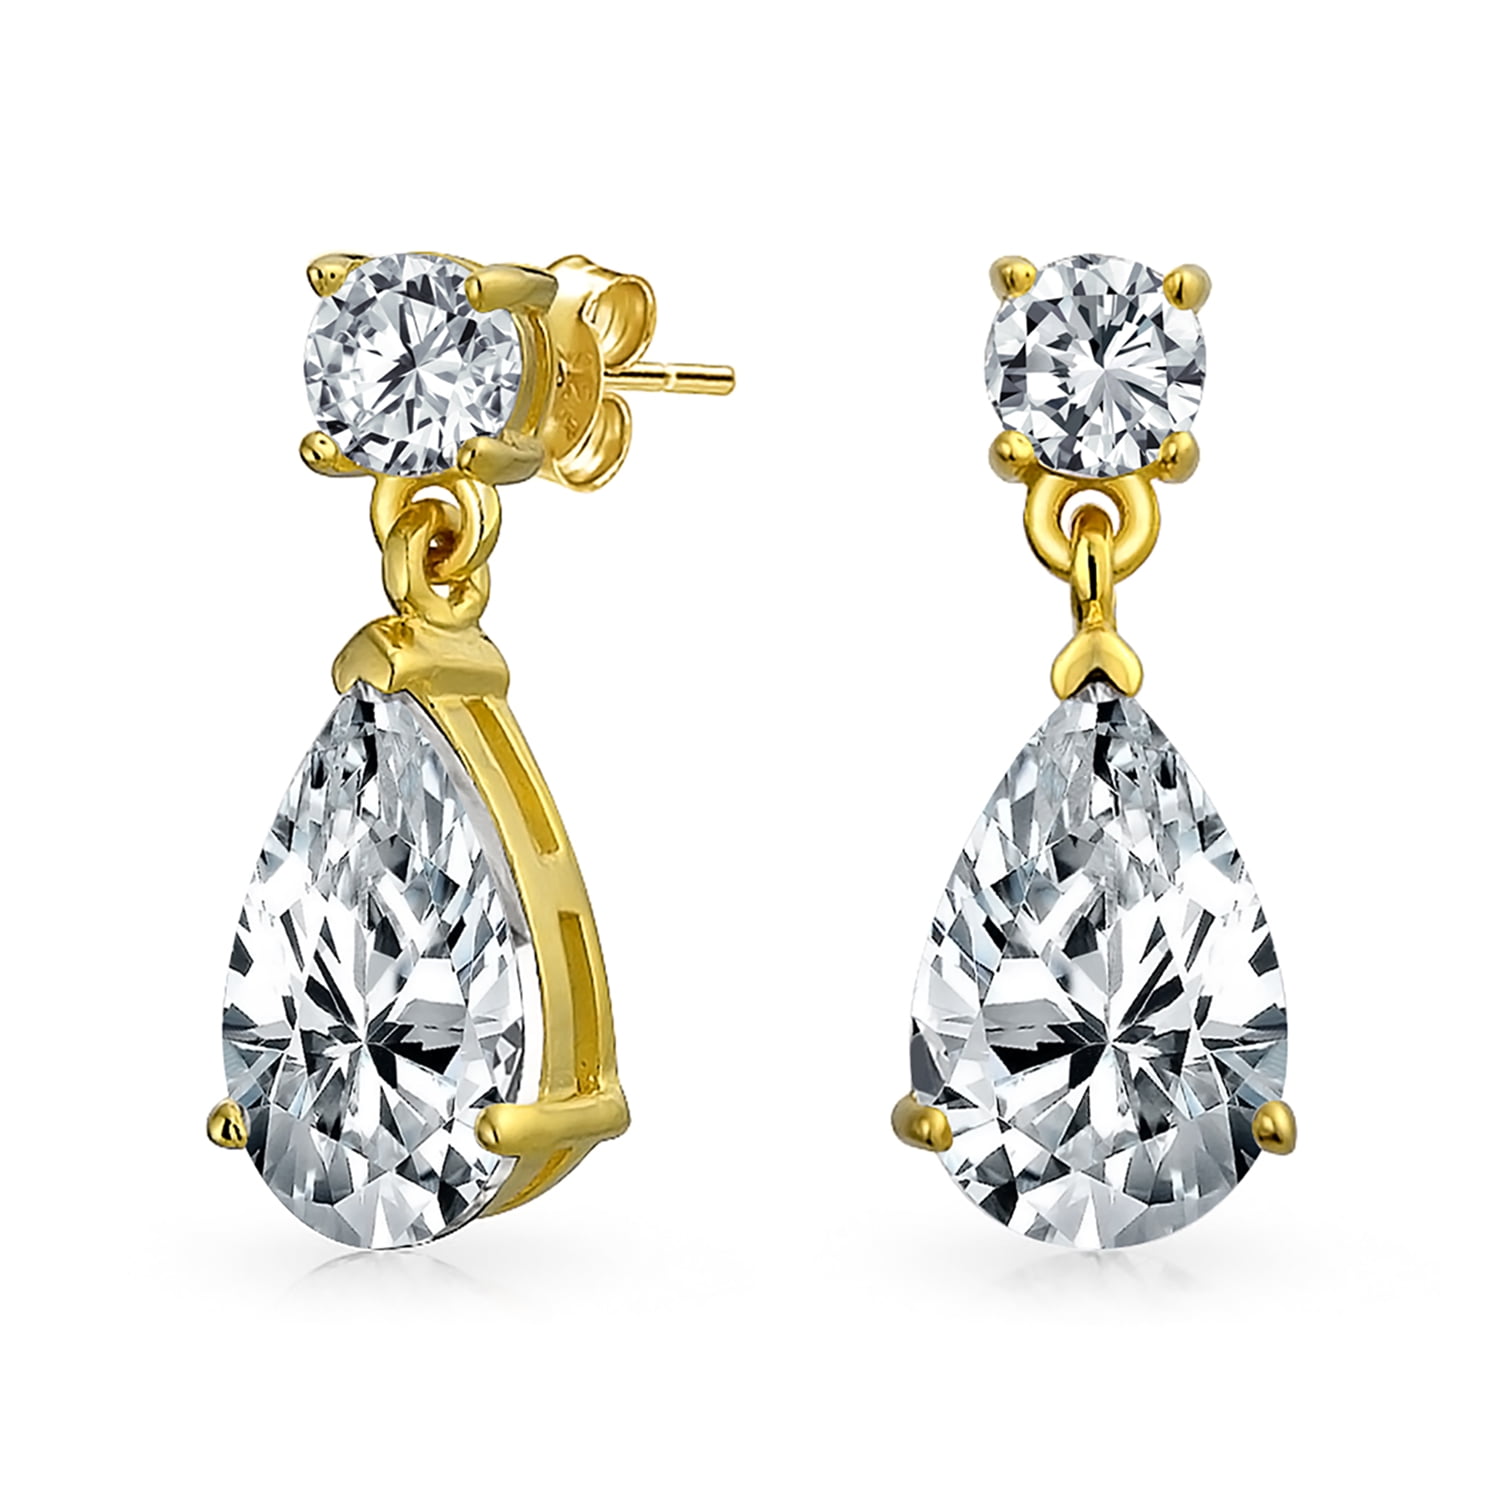 Oval Square Teardrop Cubic Zirconia Stud Drop Earrings Women Jewelry Gift 1 Pair 